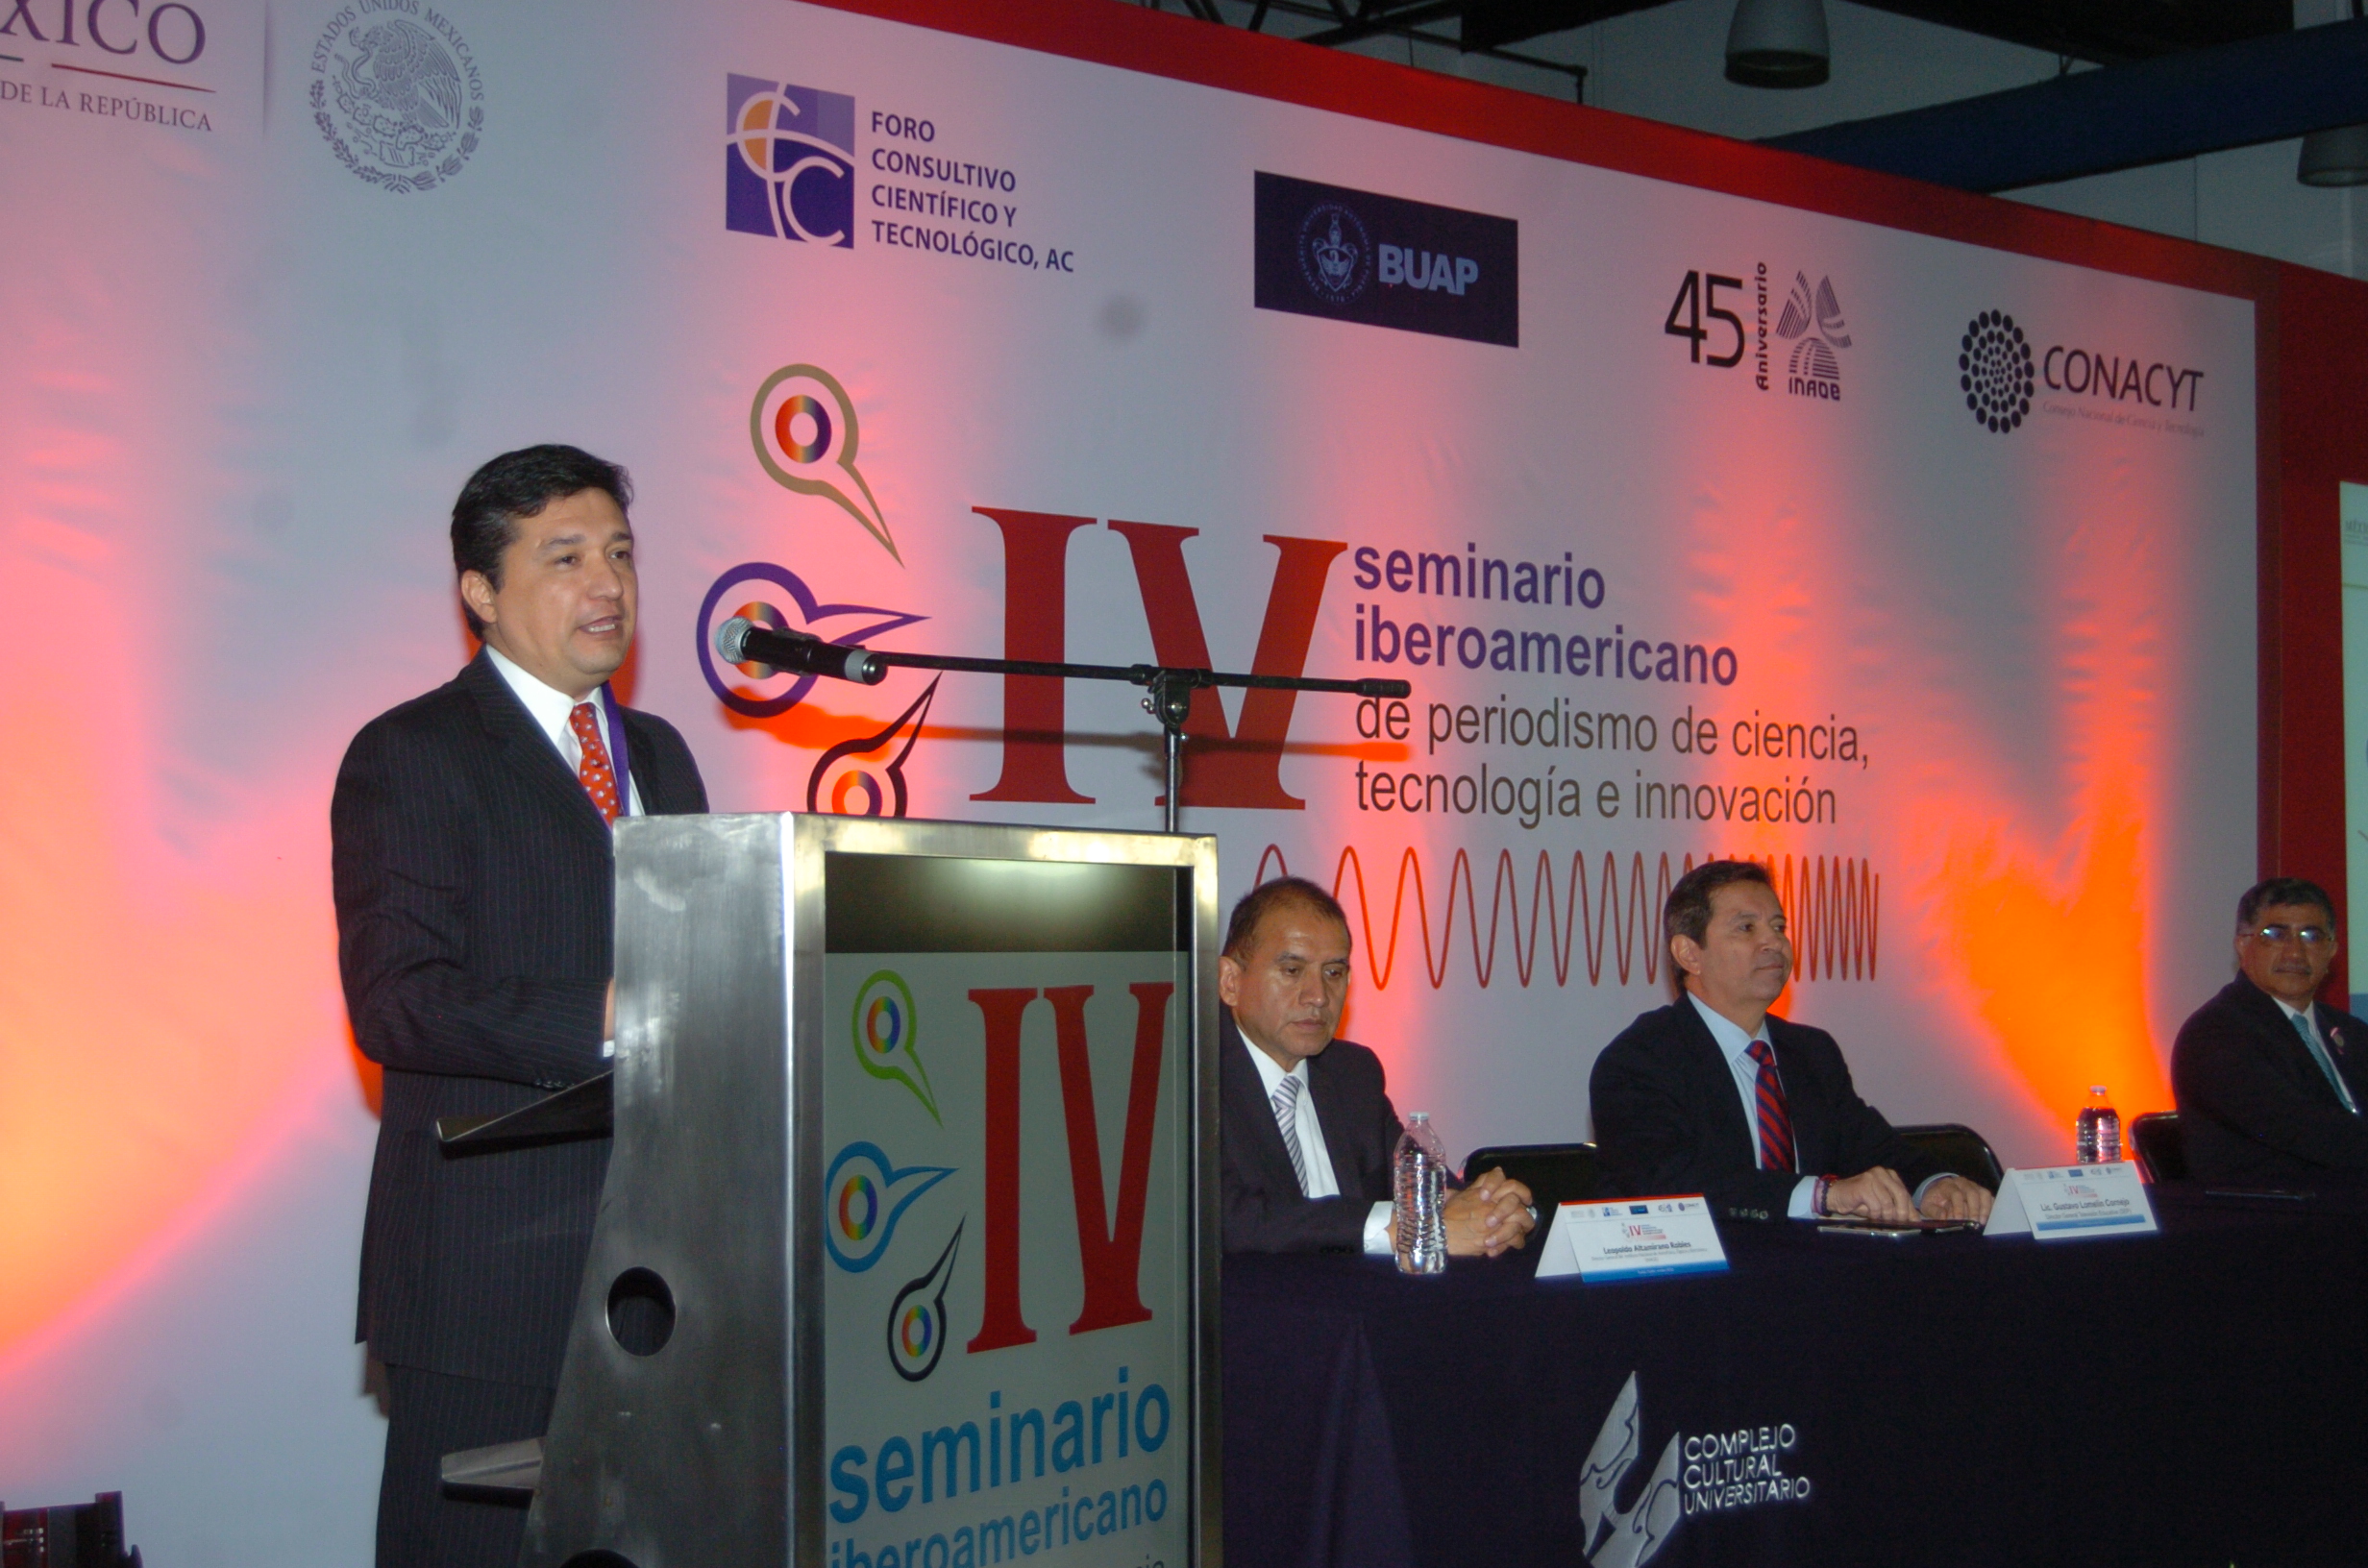 Inaugura el Conacyt el IV Seminario Iberoamericano de periodismo de ciencia, tecnología e innovación